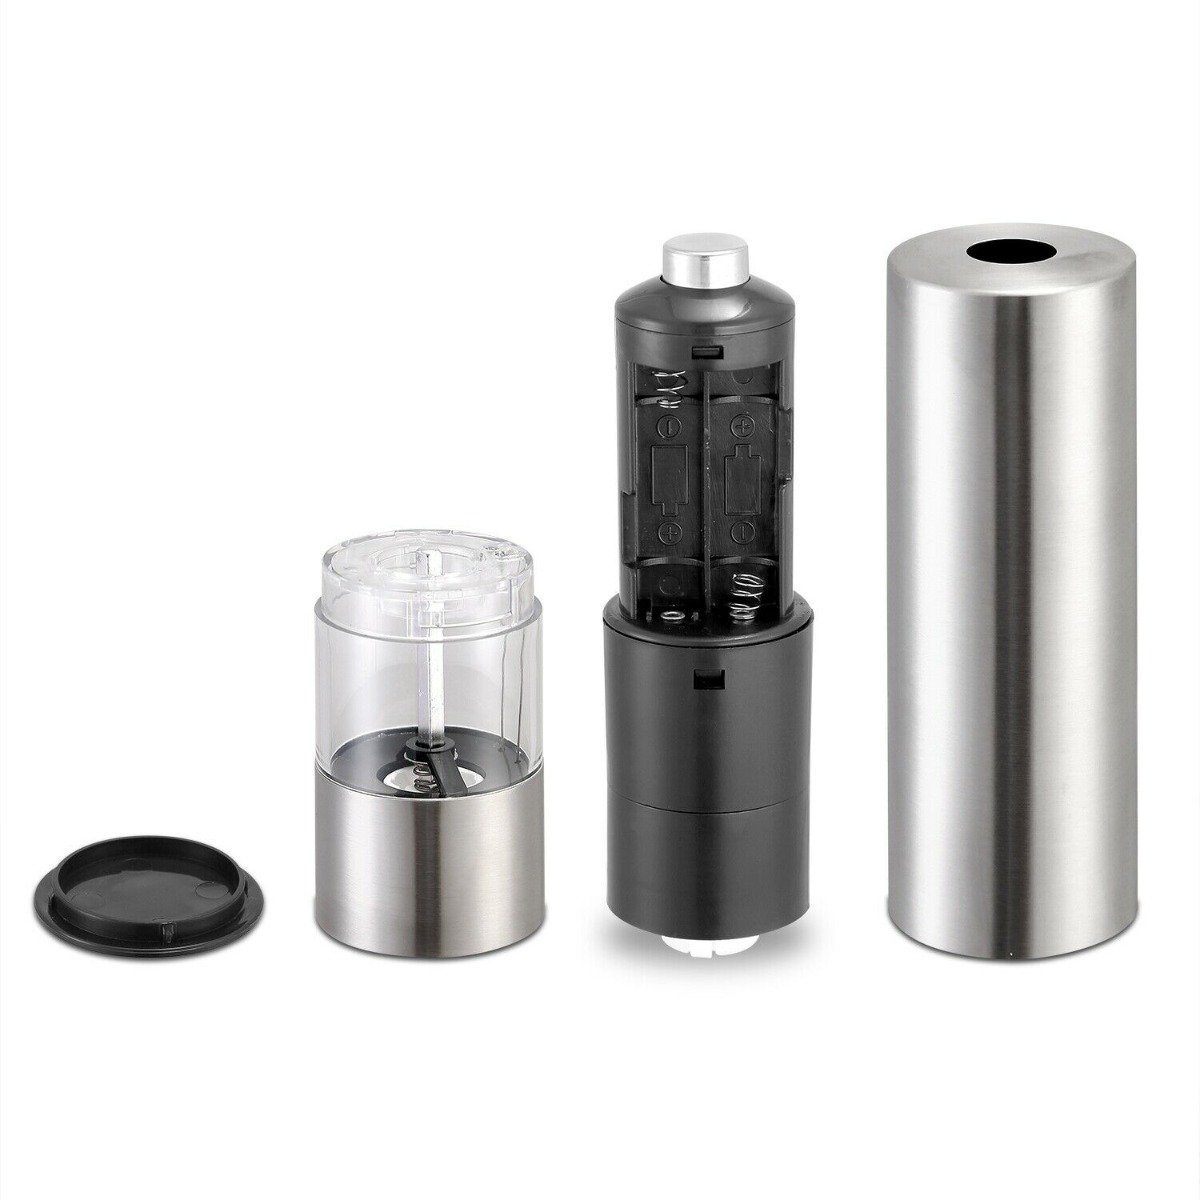 Electric Salt Pepper Grinder Light Adjustable Coarseness Stainless